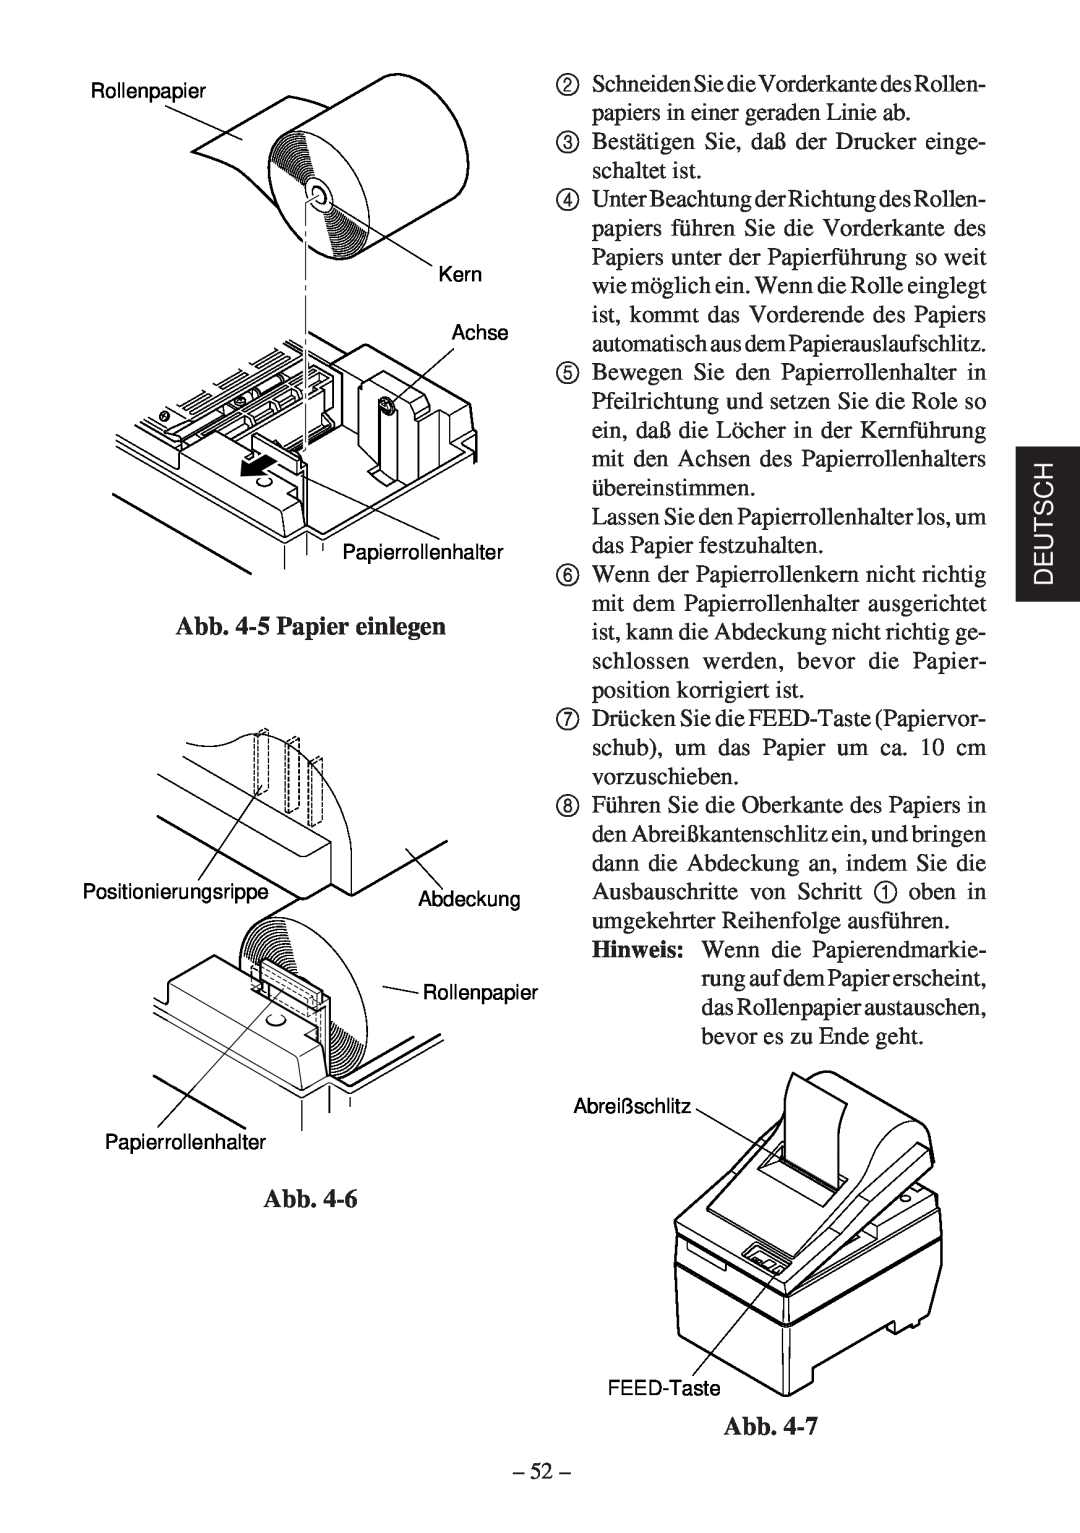 Star Micronics SP200F Abb. 4-5 Papier einlegen, Bestätigen Sie, daß der Drucker einge schaltet ist, übereinstimmen 